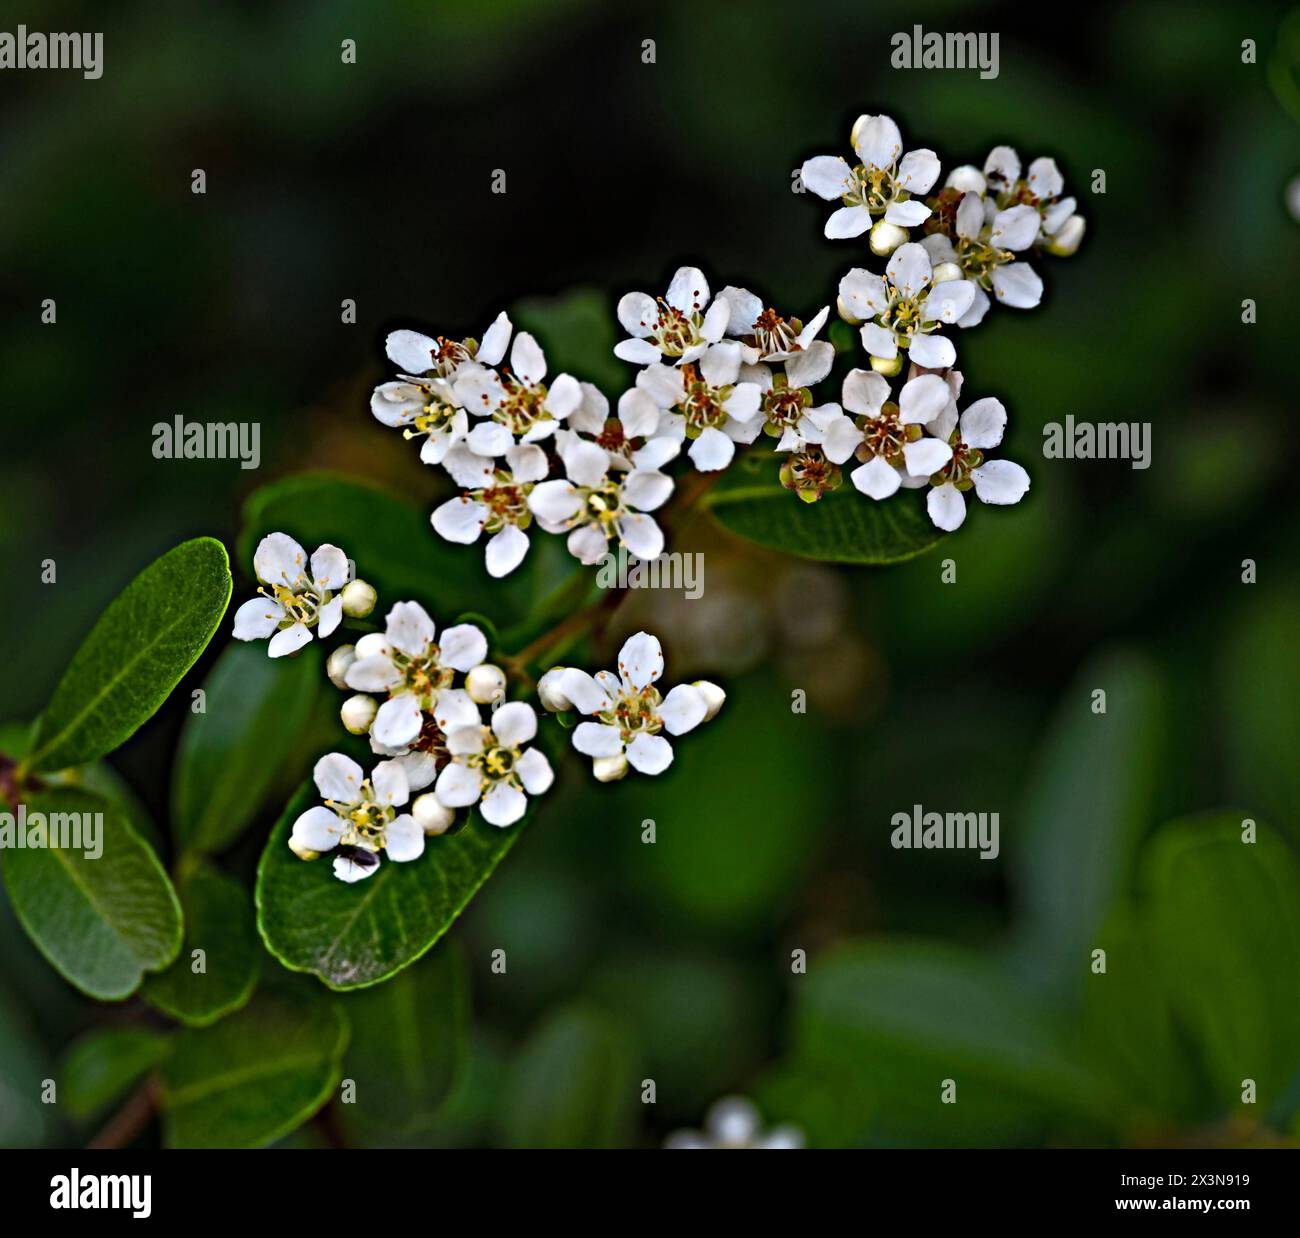 White flowers of slender firethorn Stock Photo